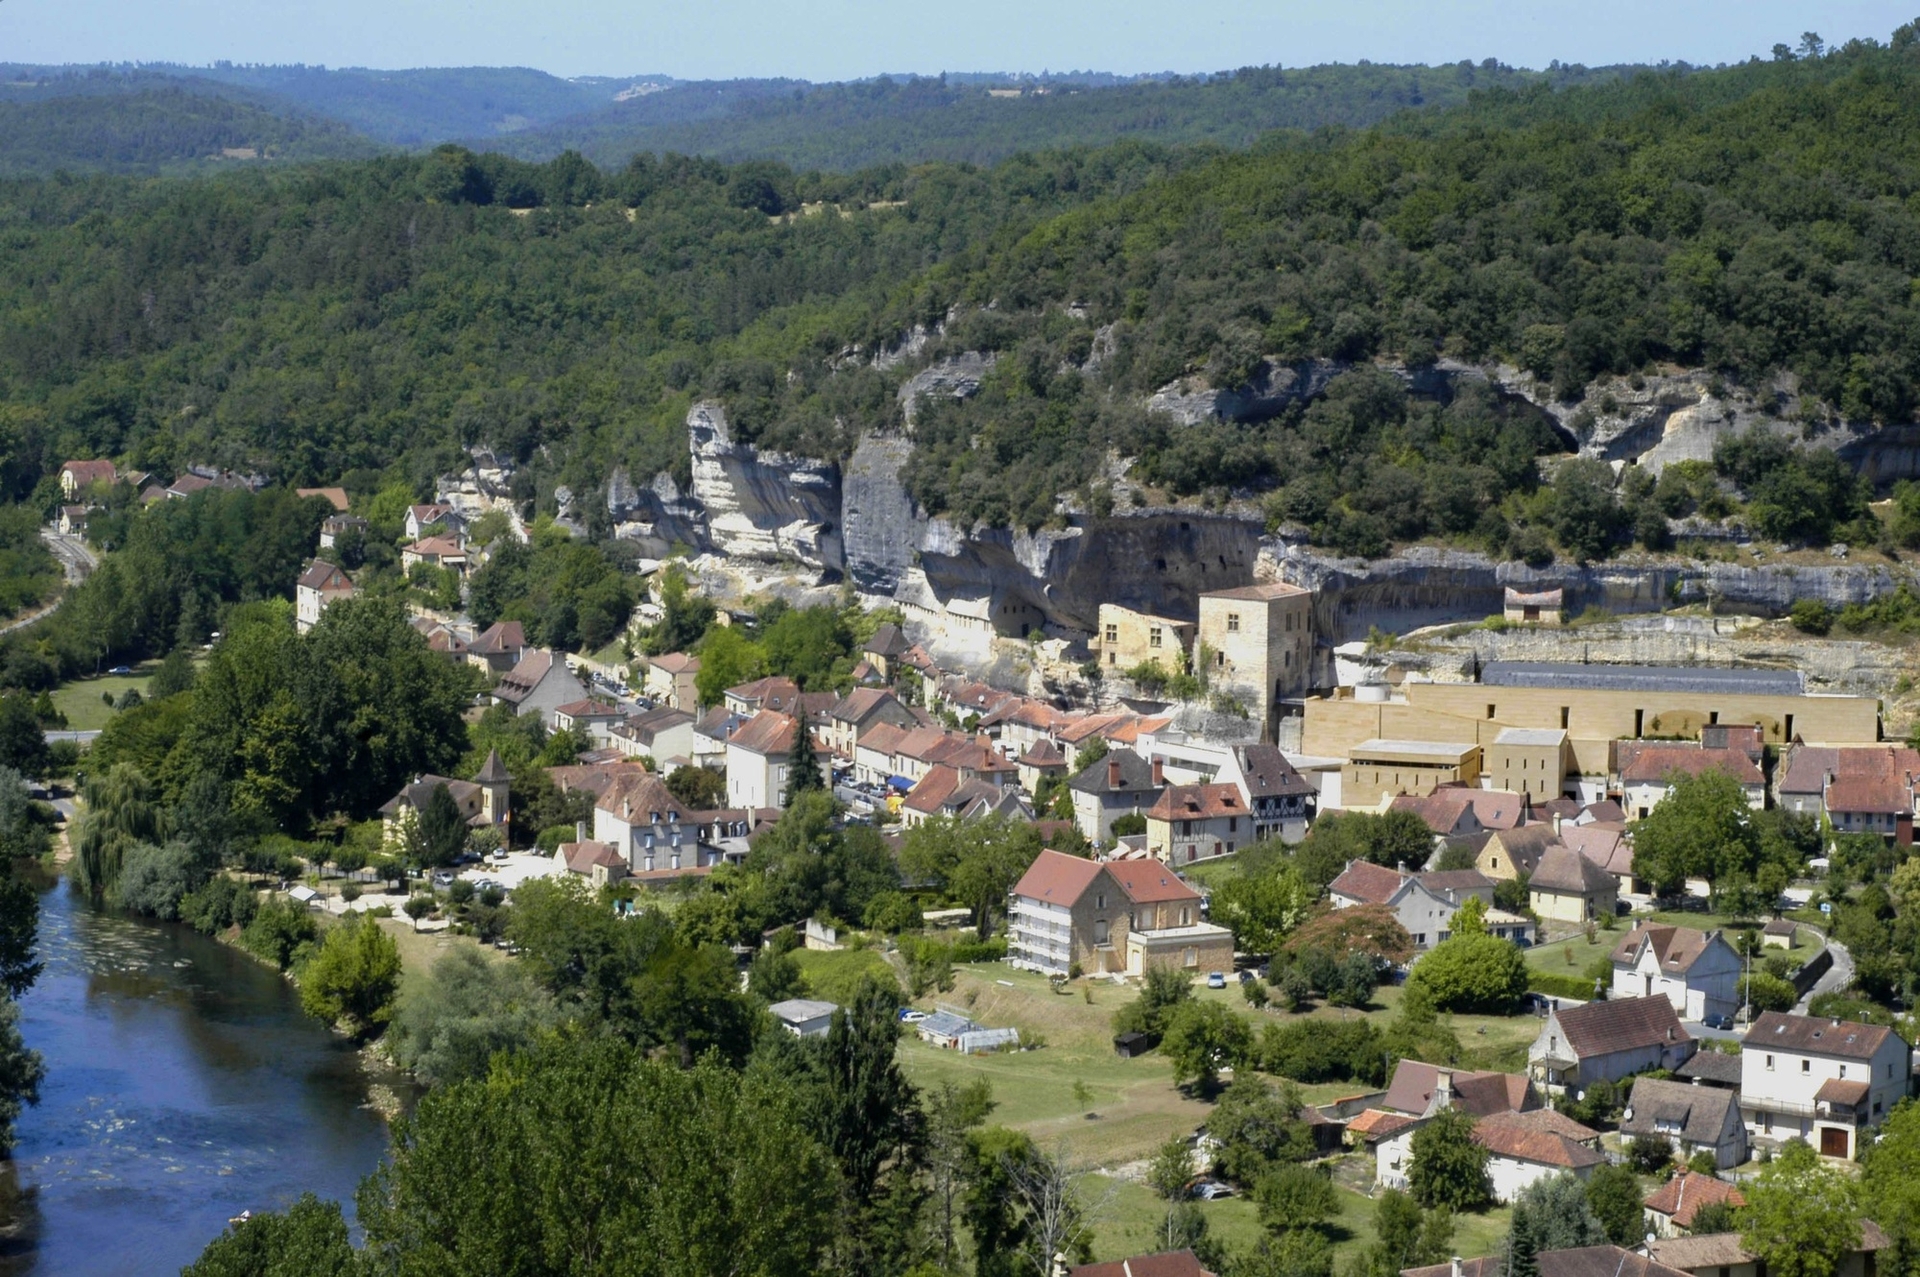 Vue d'ensemble des Eyzies-de-Tayac en Dordogne, où se trouve l'abri Cro-Magnon. © Musée National de Préhistoire. Cl. Philippe Jugie